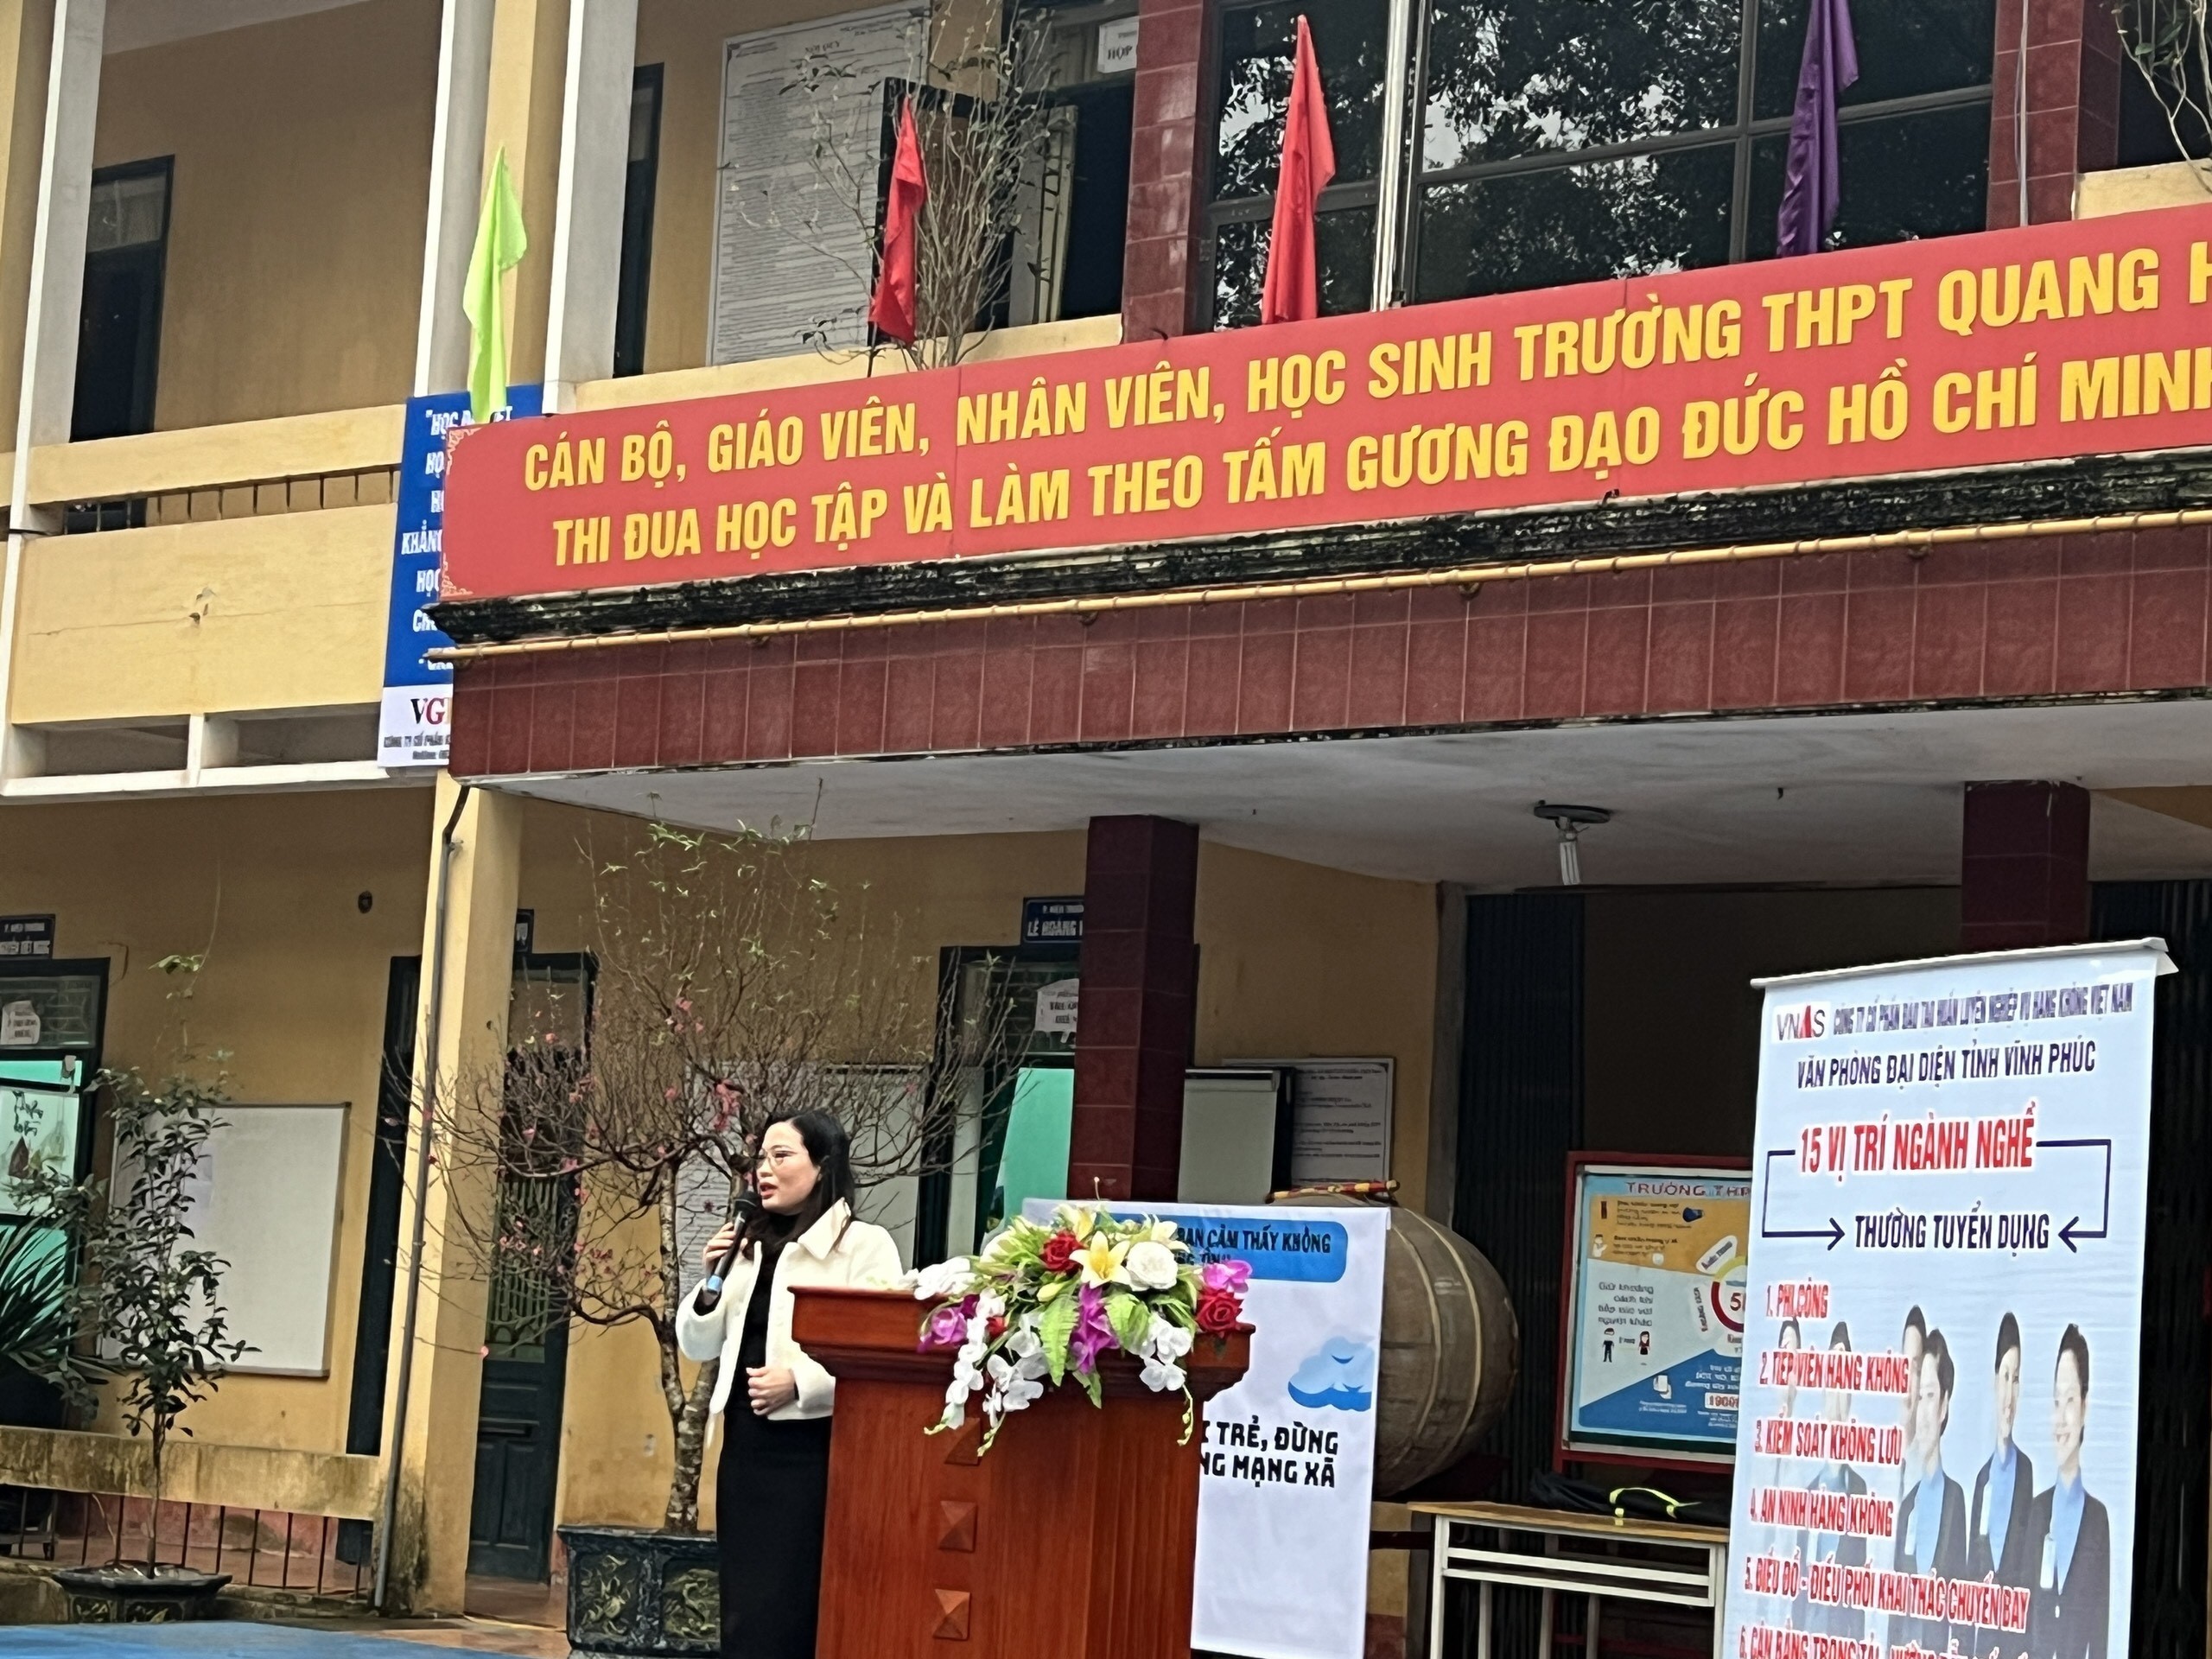 TT Huấn luyện bay-Định hướng nghề nghiệp cho học sinh trường THPT Quang Hà, Vĩnh Phúc